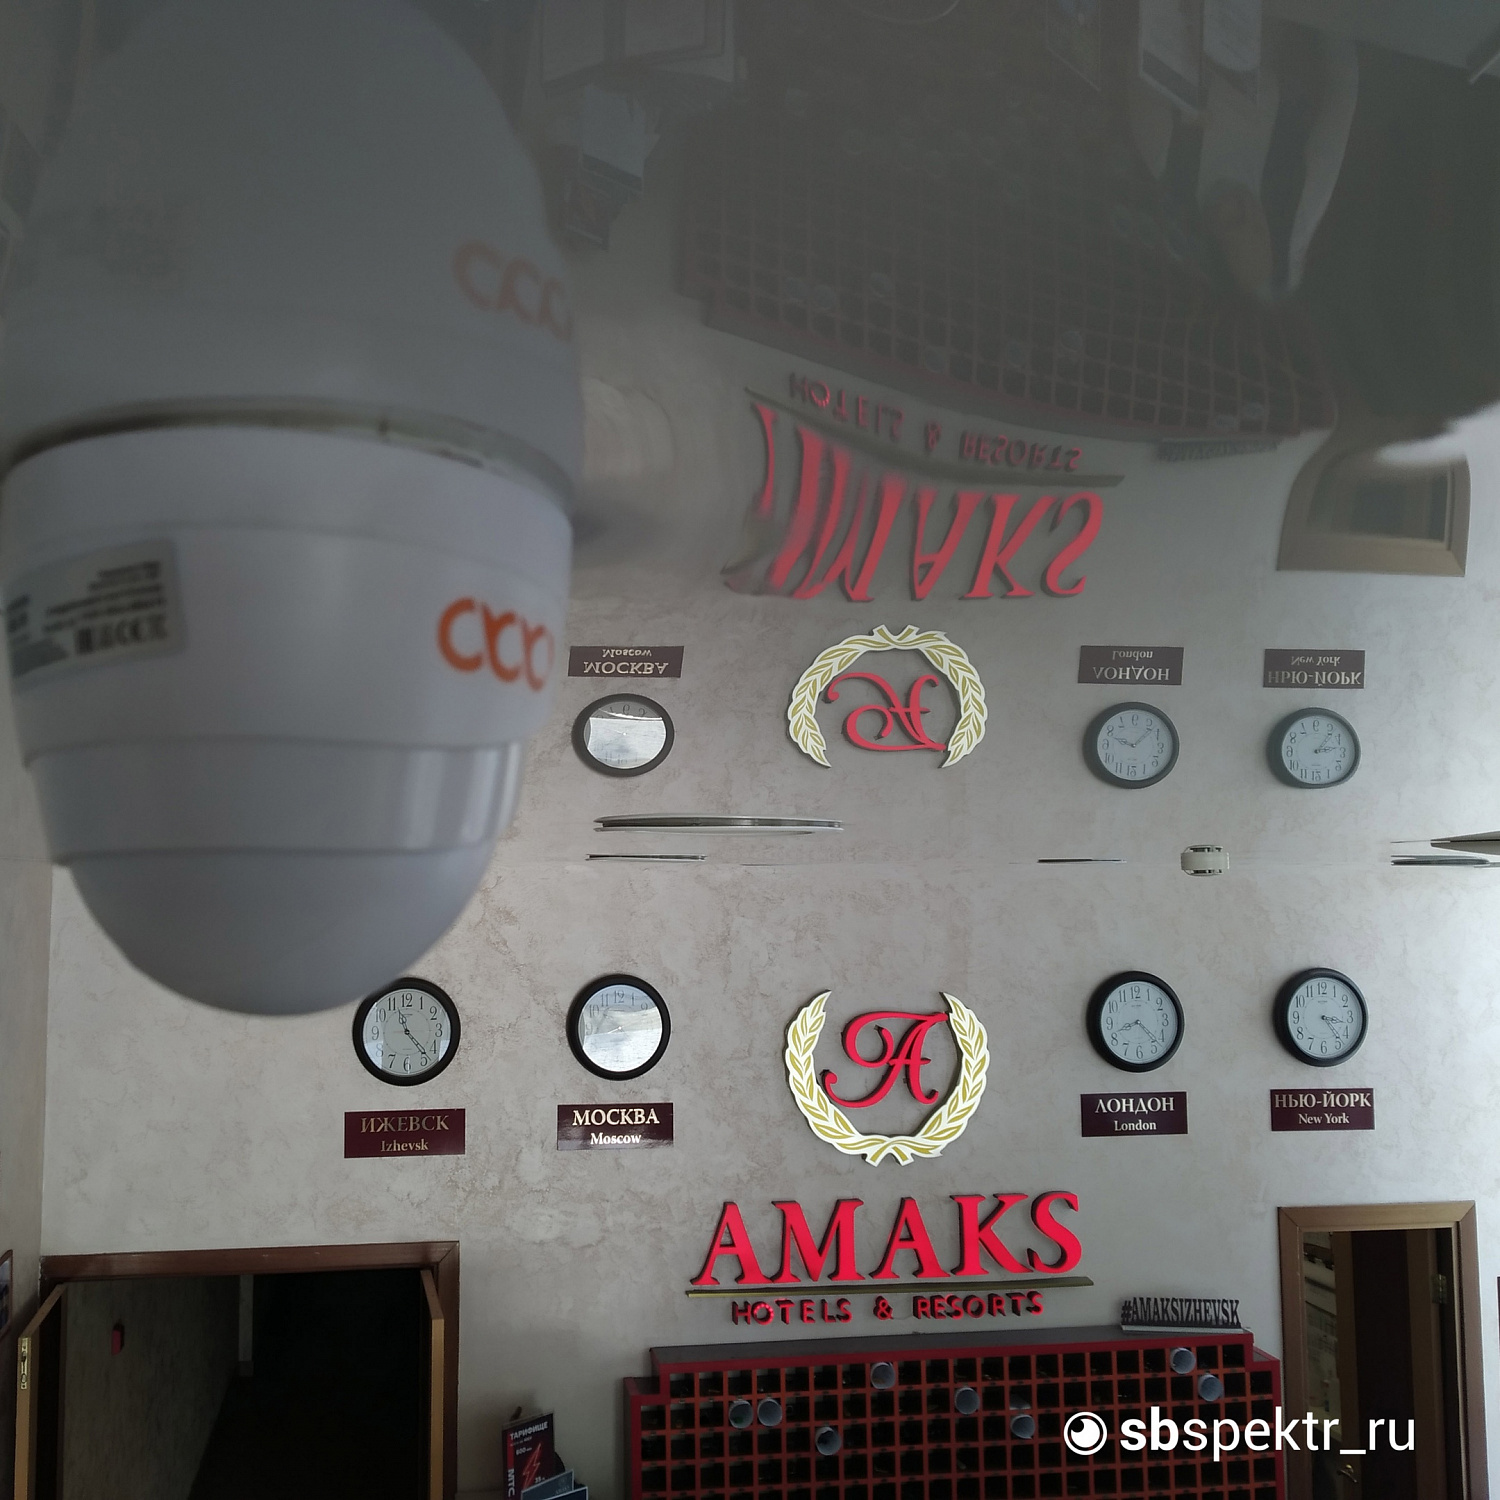 Модернизация видеонаблюдения в центральной гостинице Ижевска